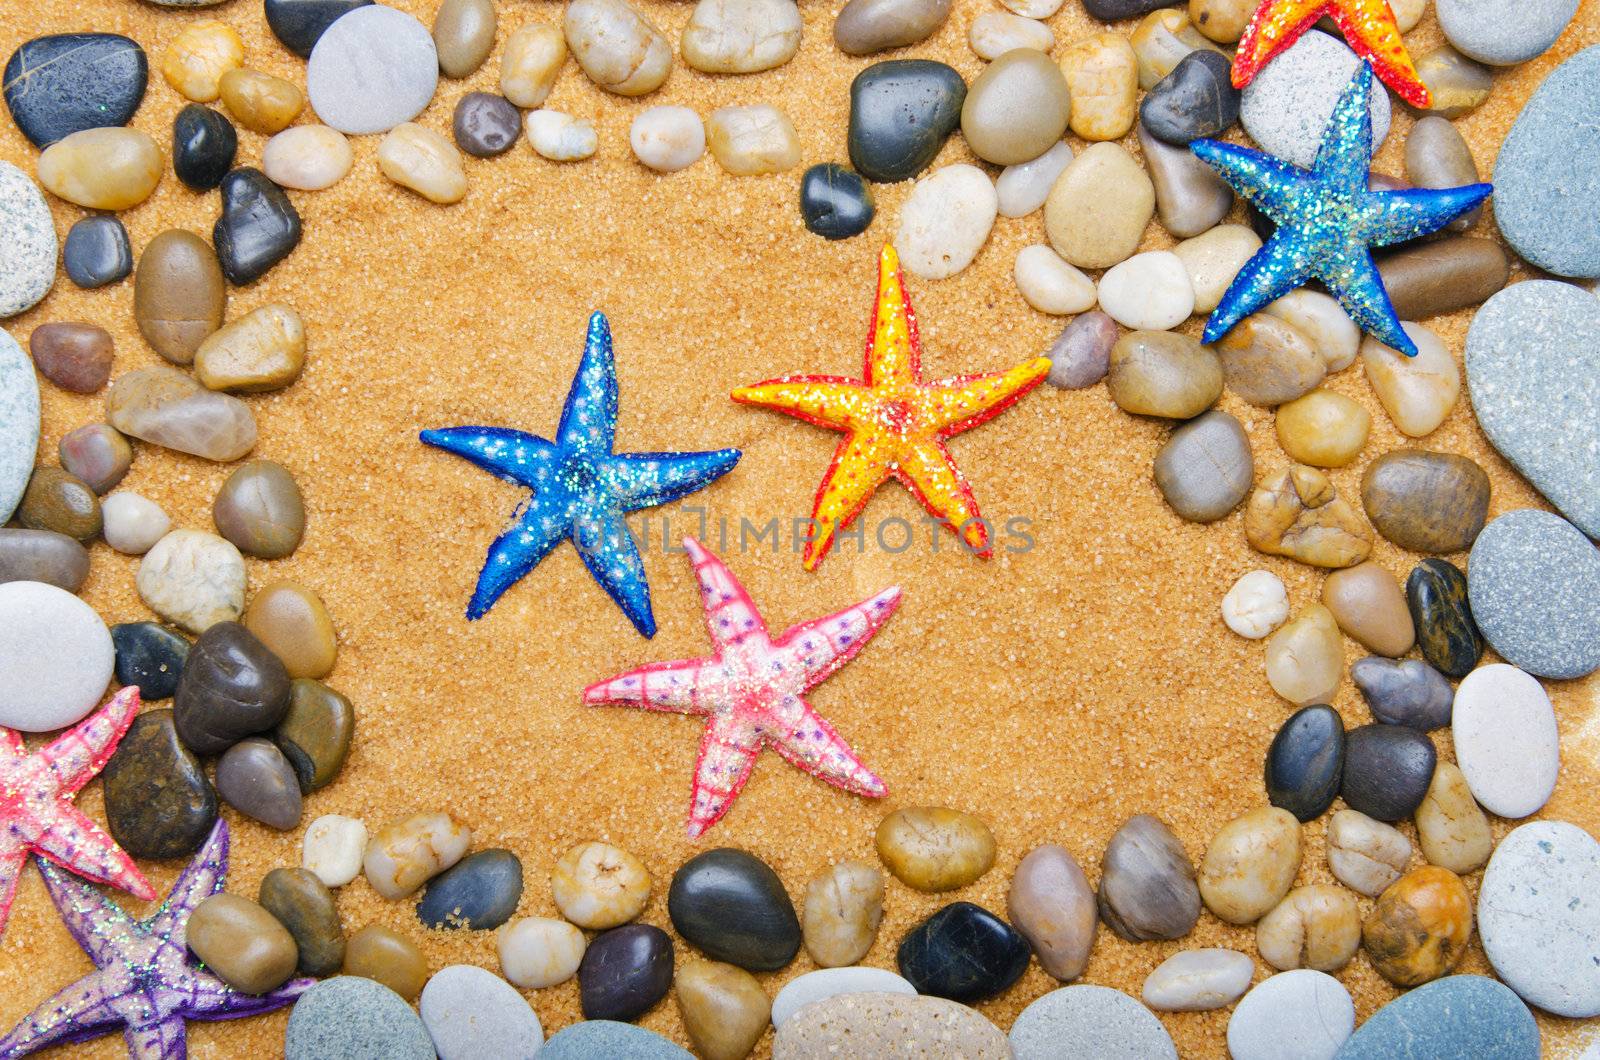 Sea stars and pebbles on sand by Elnur